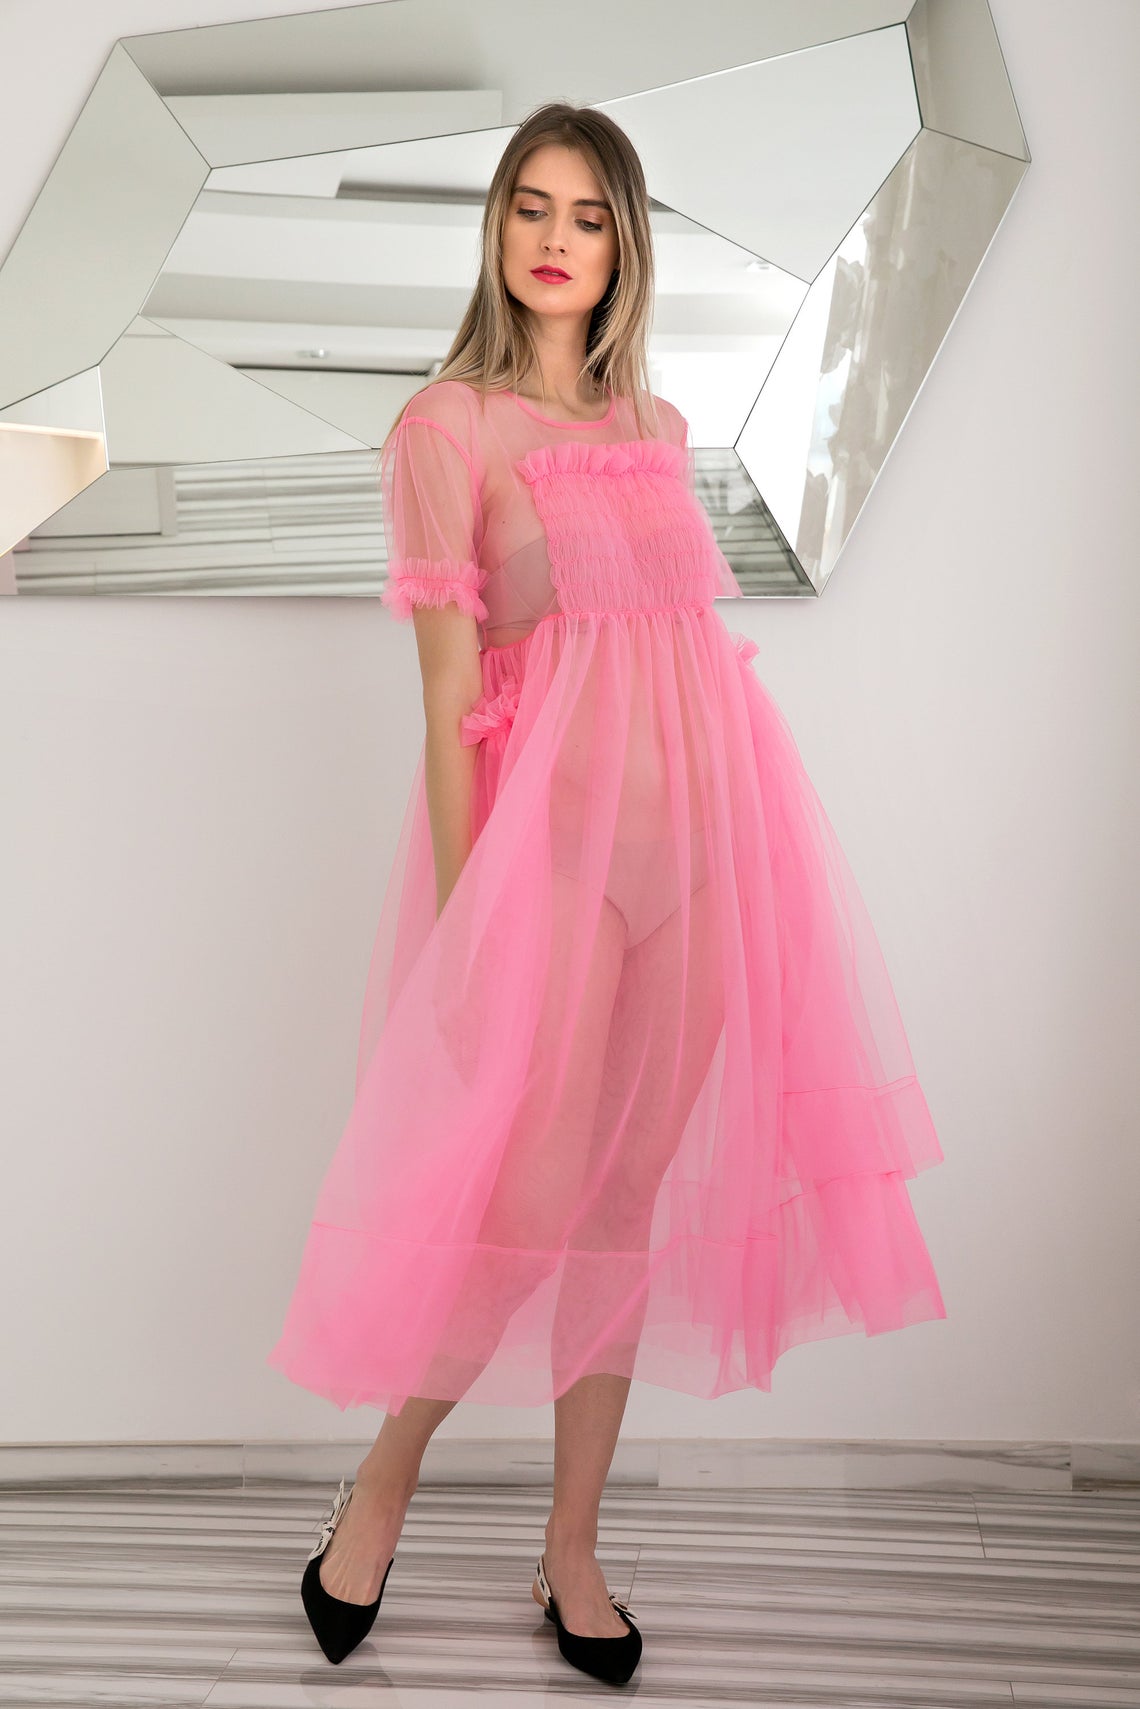 Sheer Pink Dress